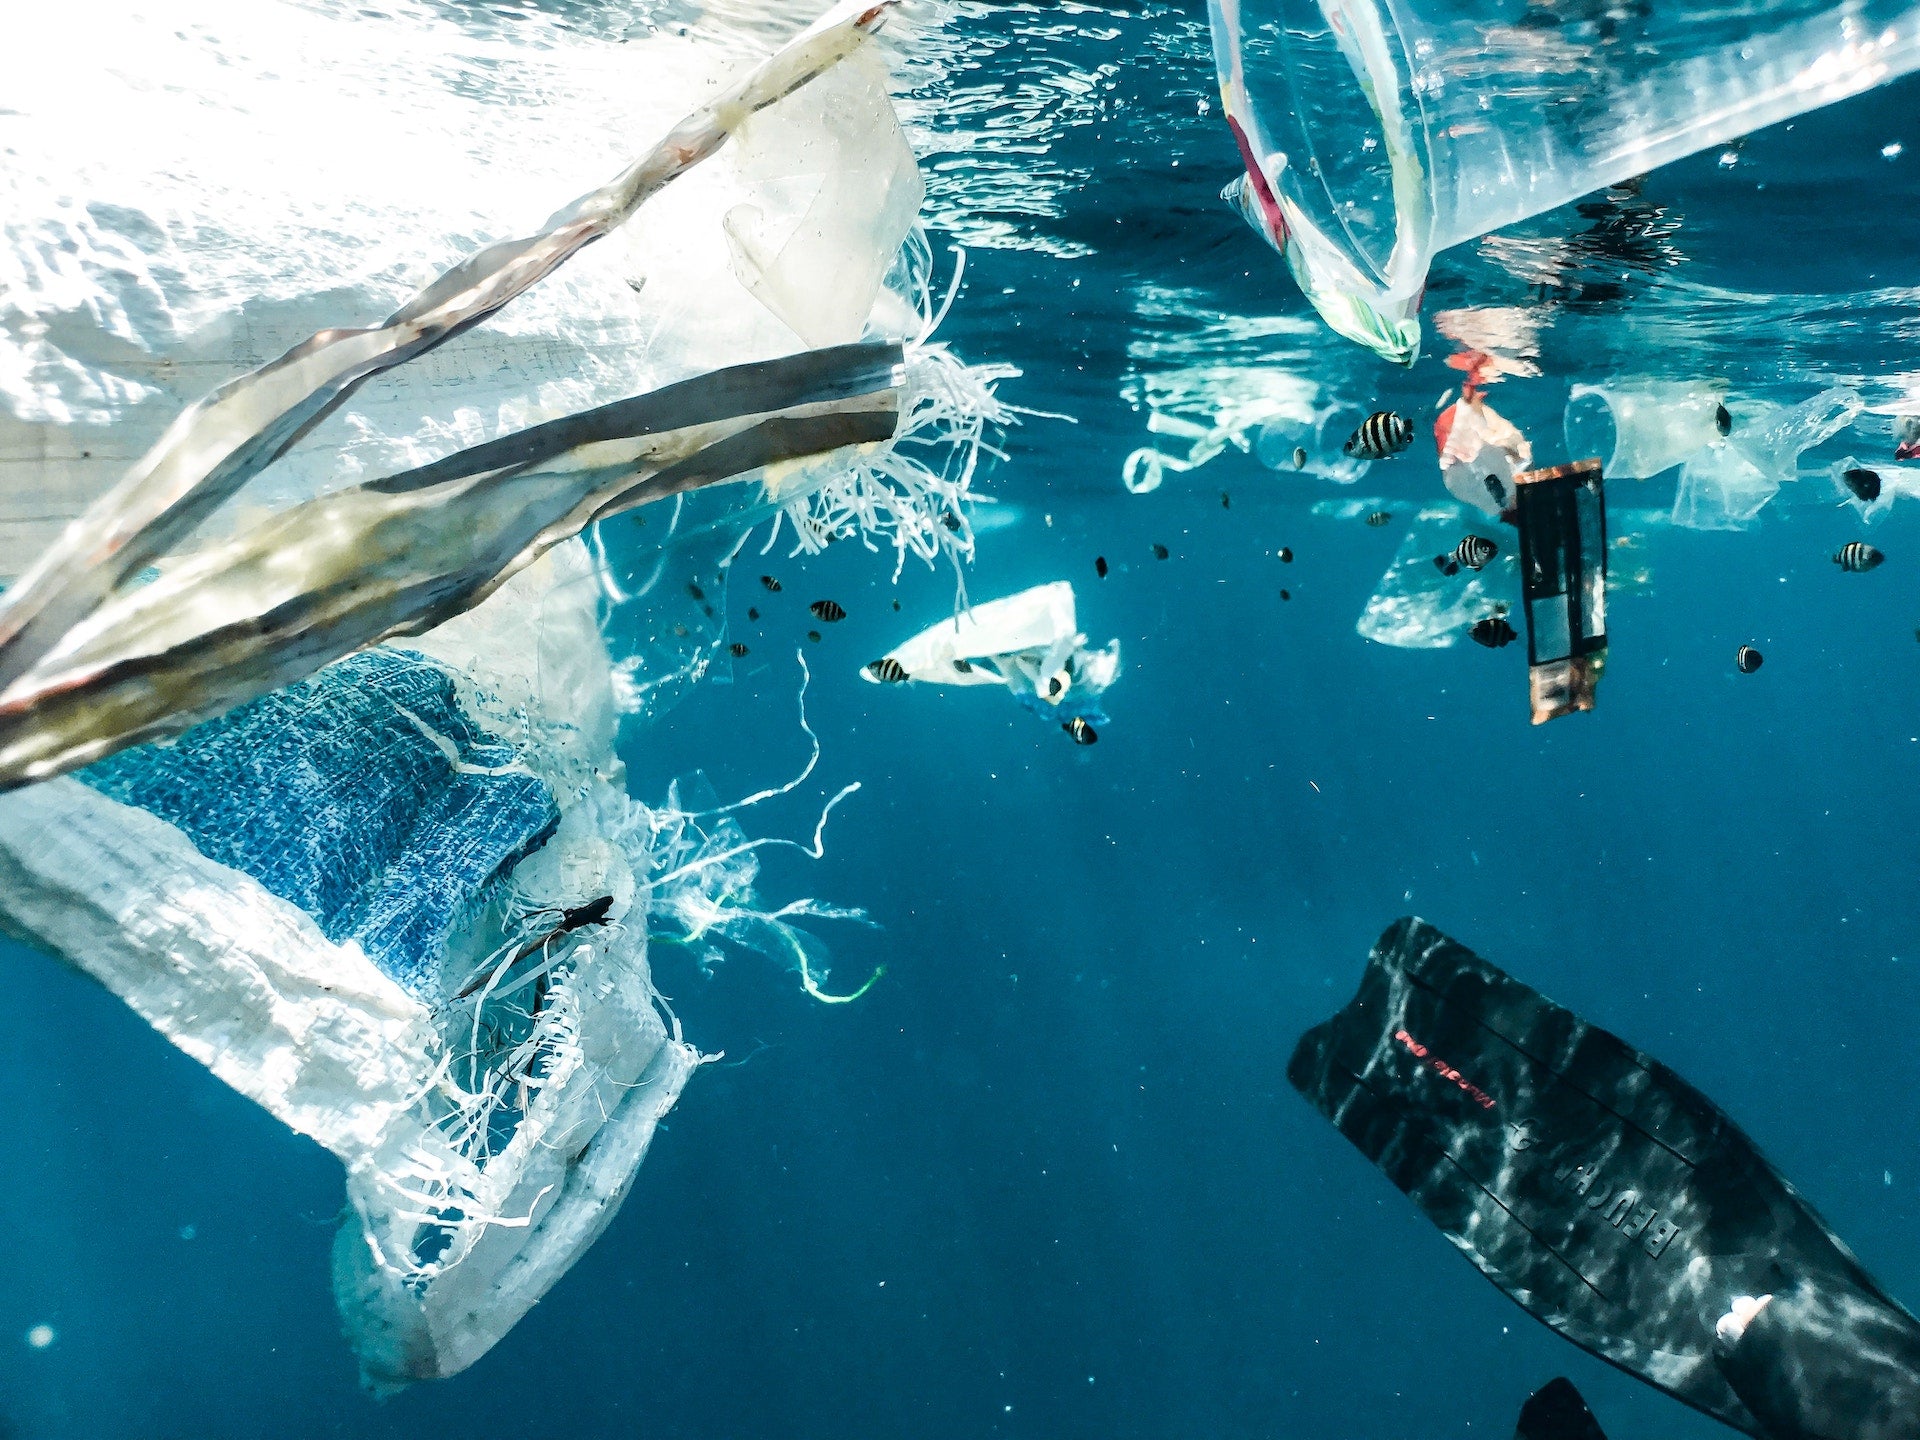 Non eco-friendly-trash bags in ocean